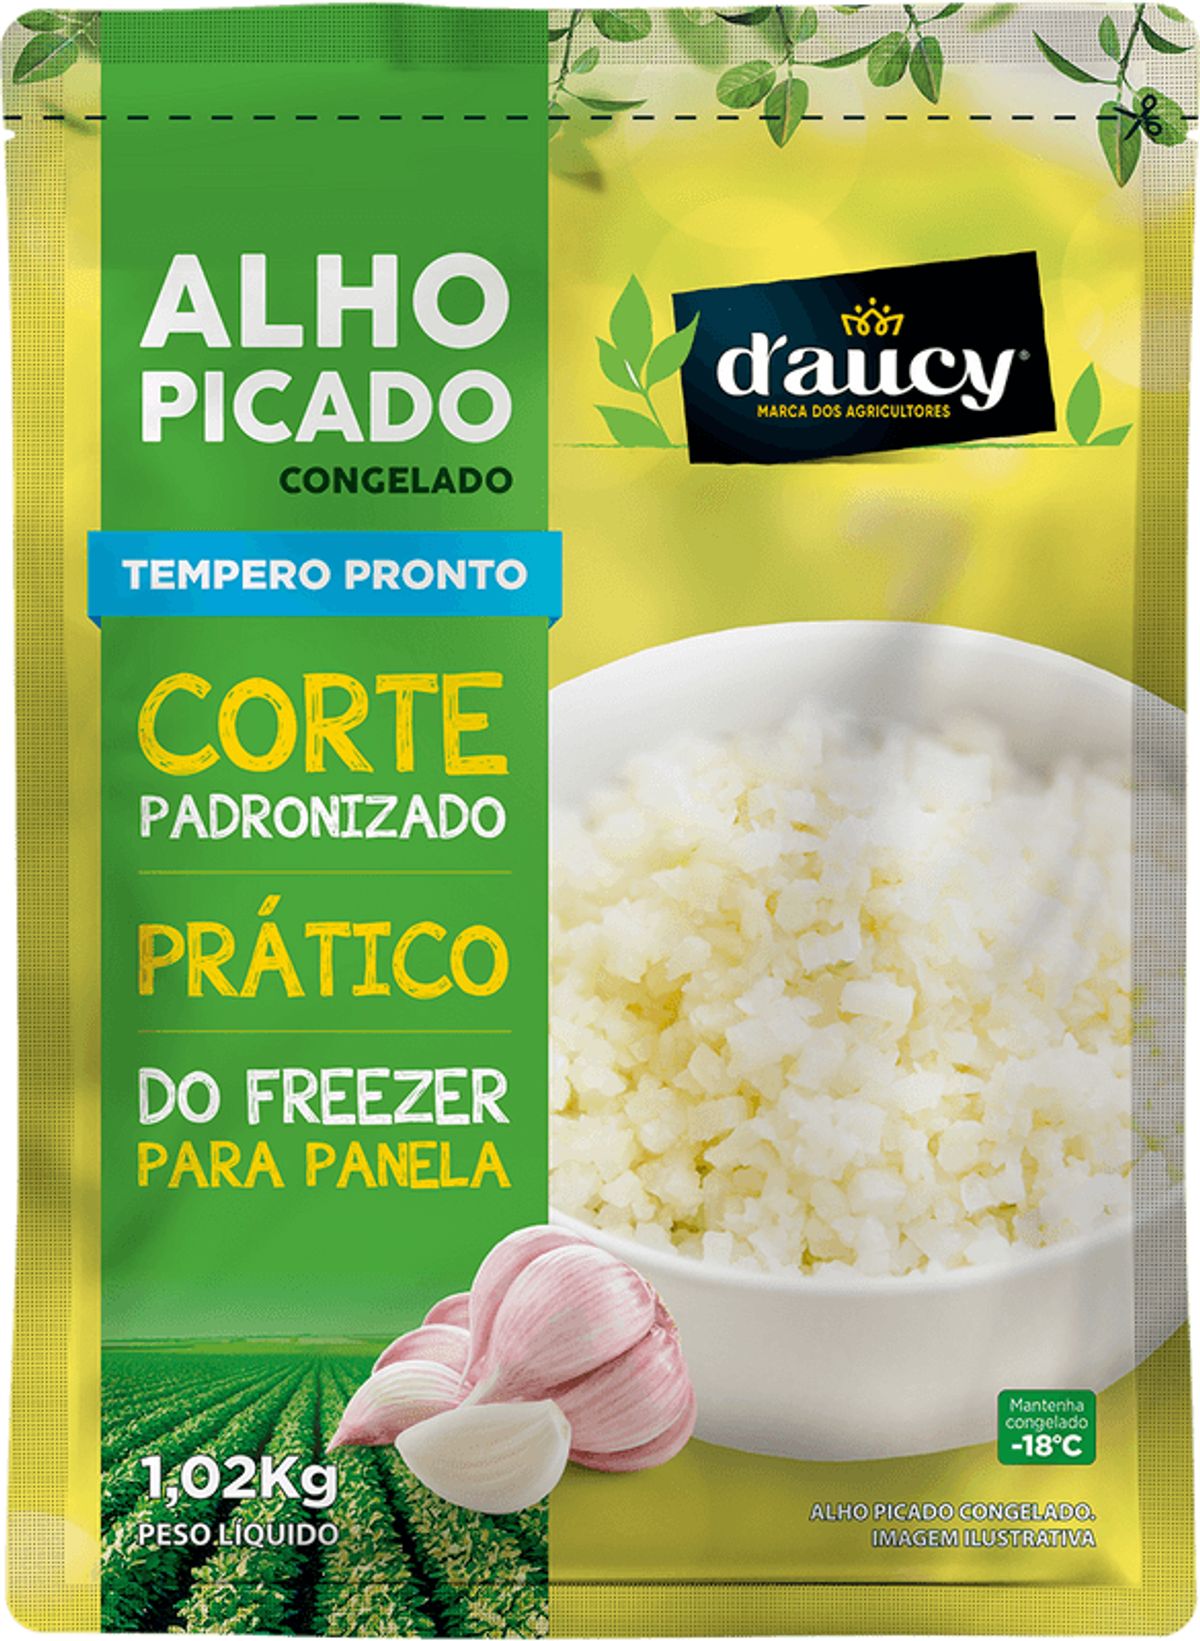 Alho Picado D'aucy Congelado Pacote 1,02kg image number 0